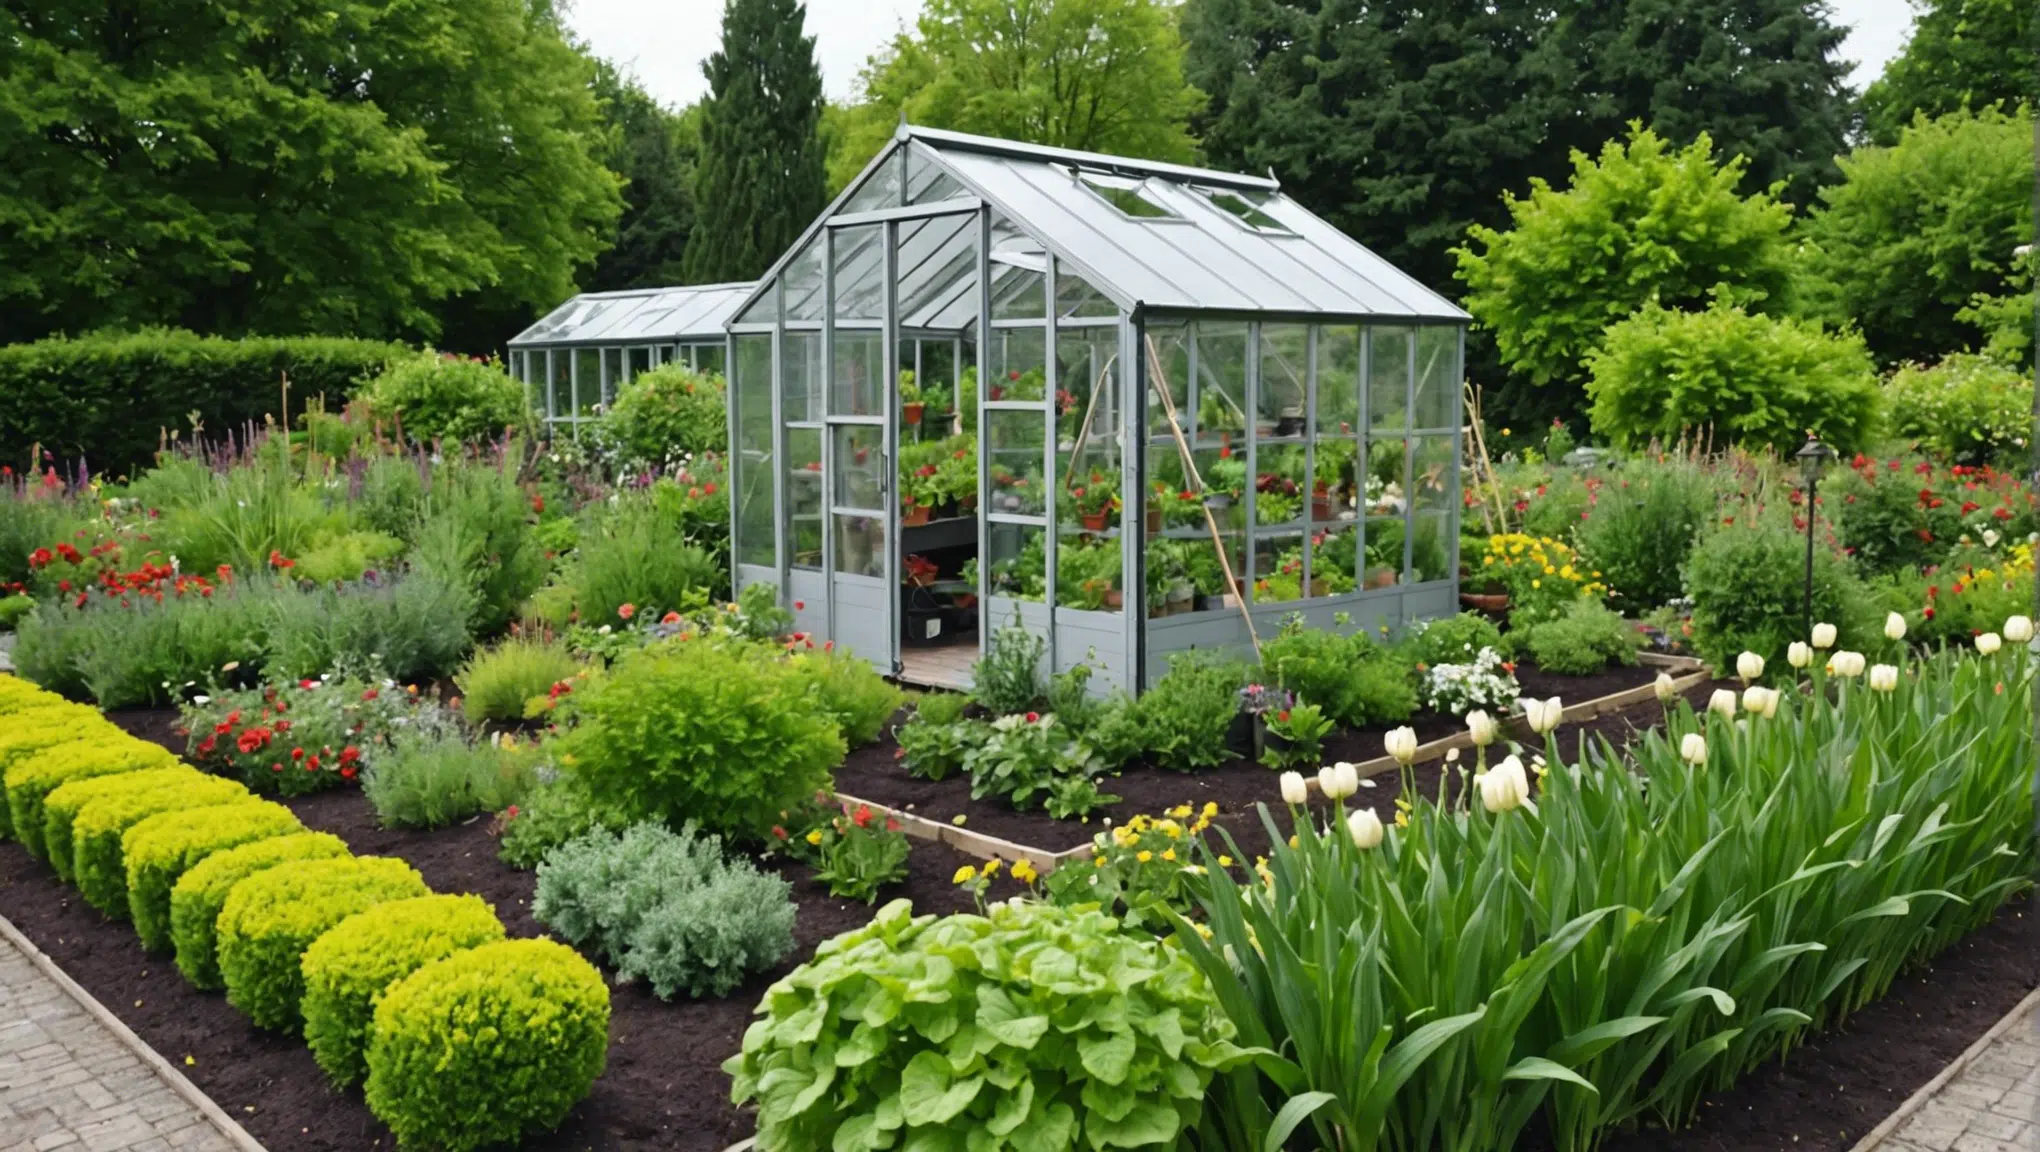 découvrez comment cultiver un jardin luxuriant en suivant ces astuces horticoles secrètes pour des plantes saines et vigoureuses.